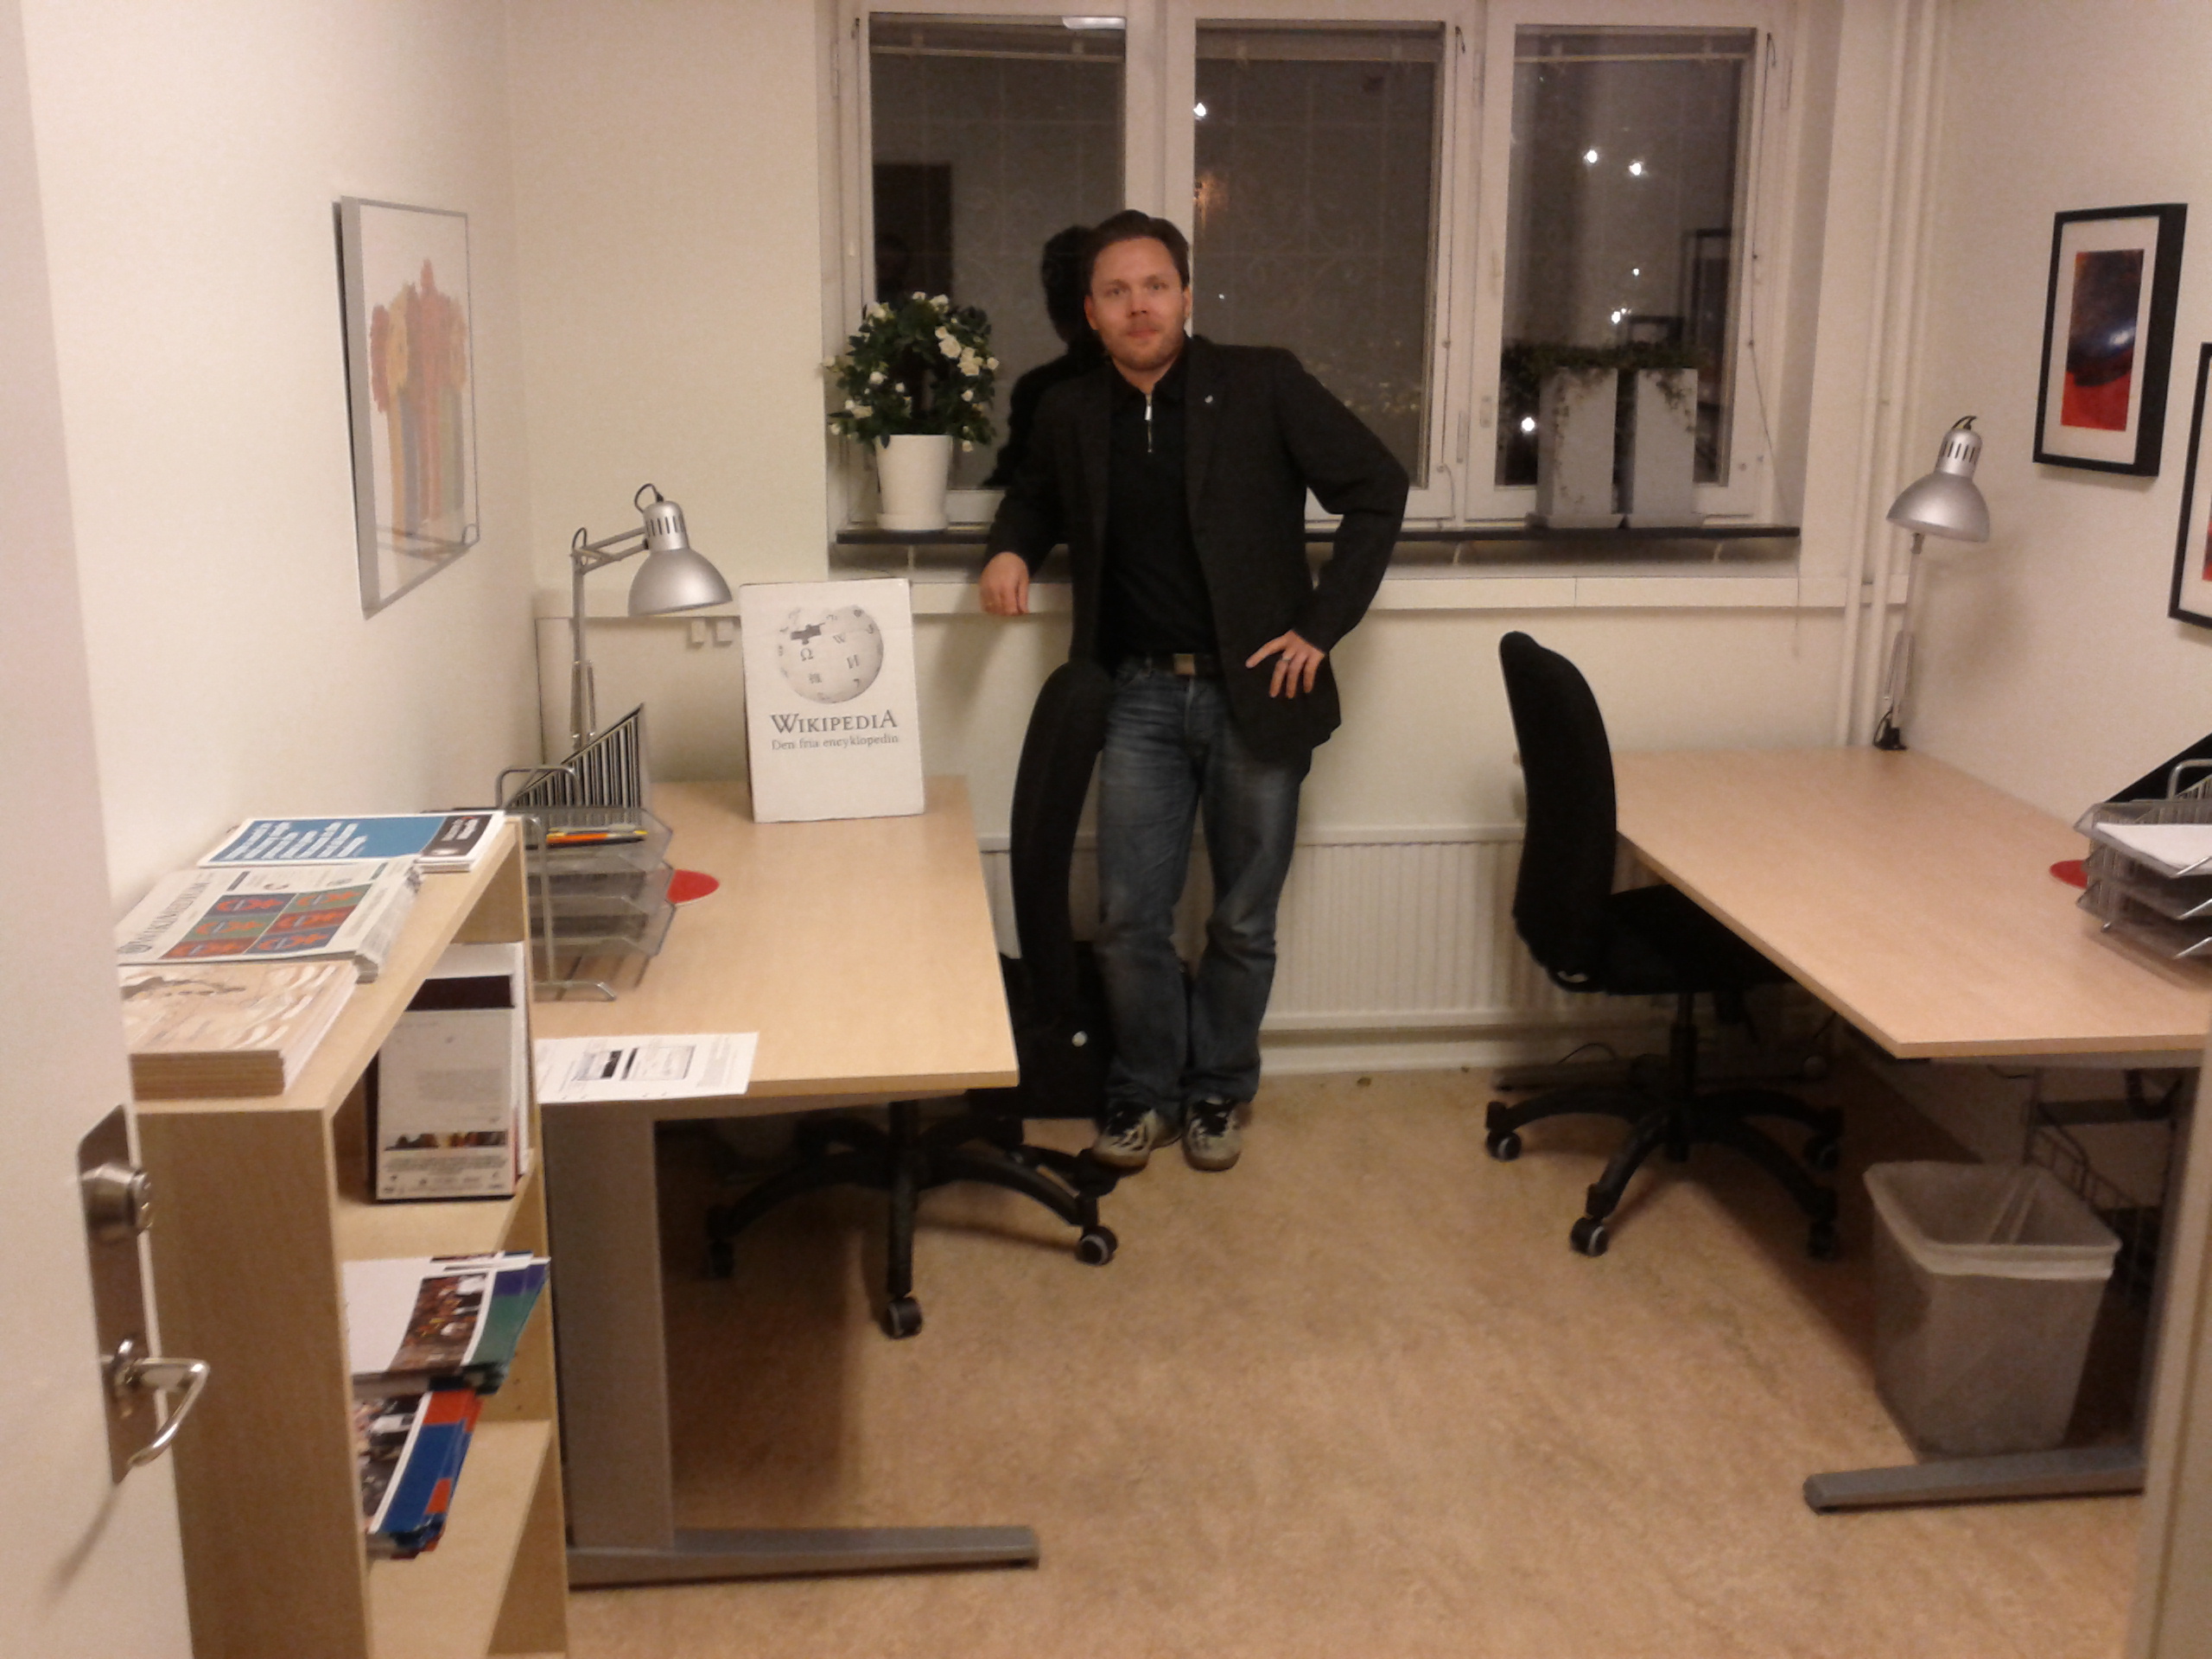 Jan Ainali på Wikimedia Sveriges kontor